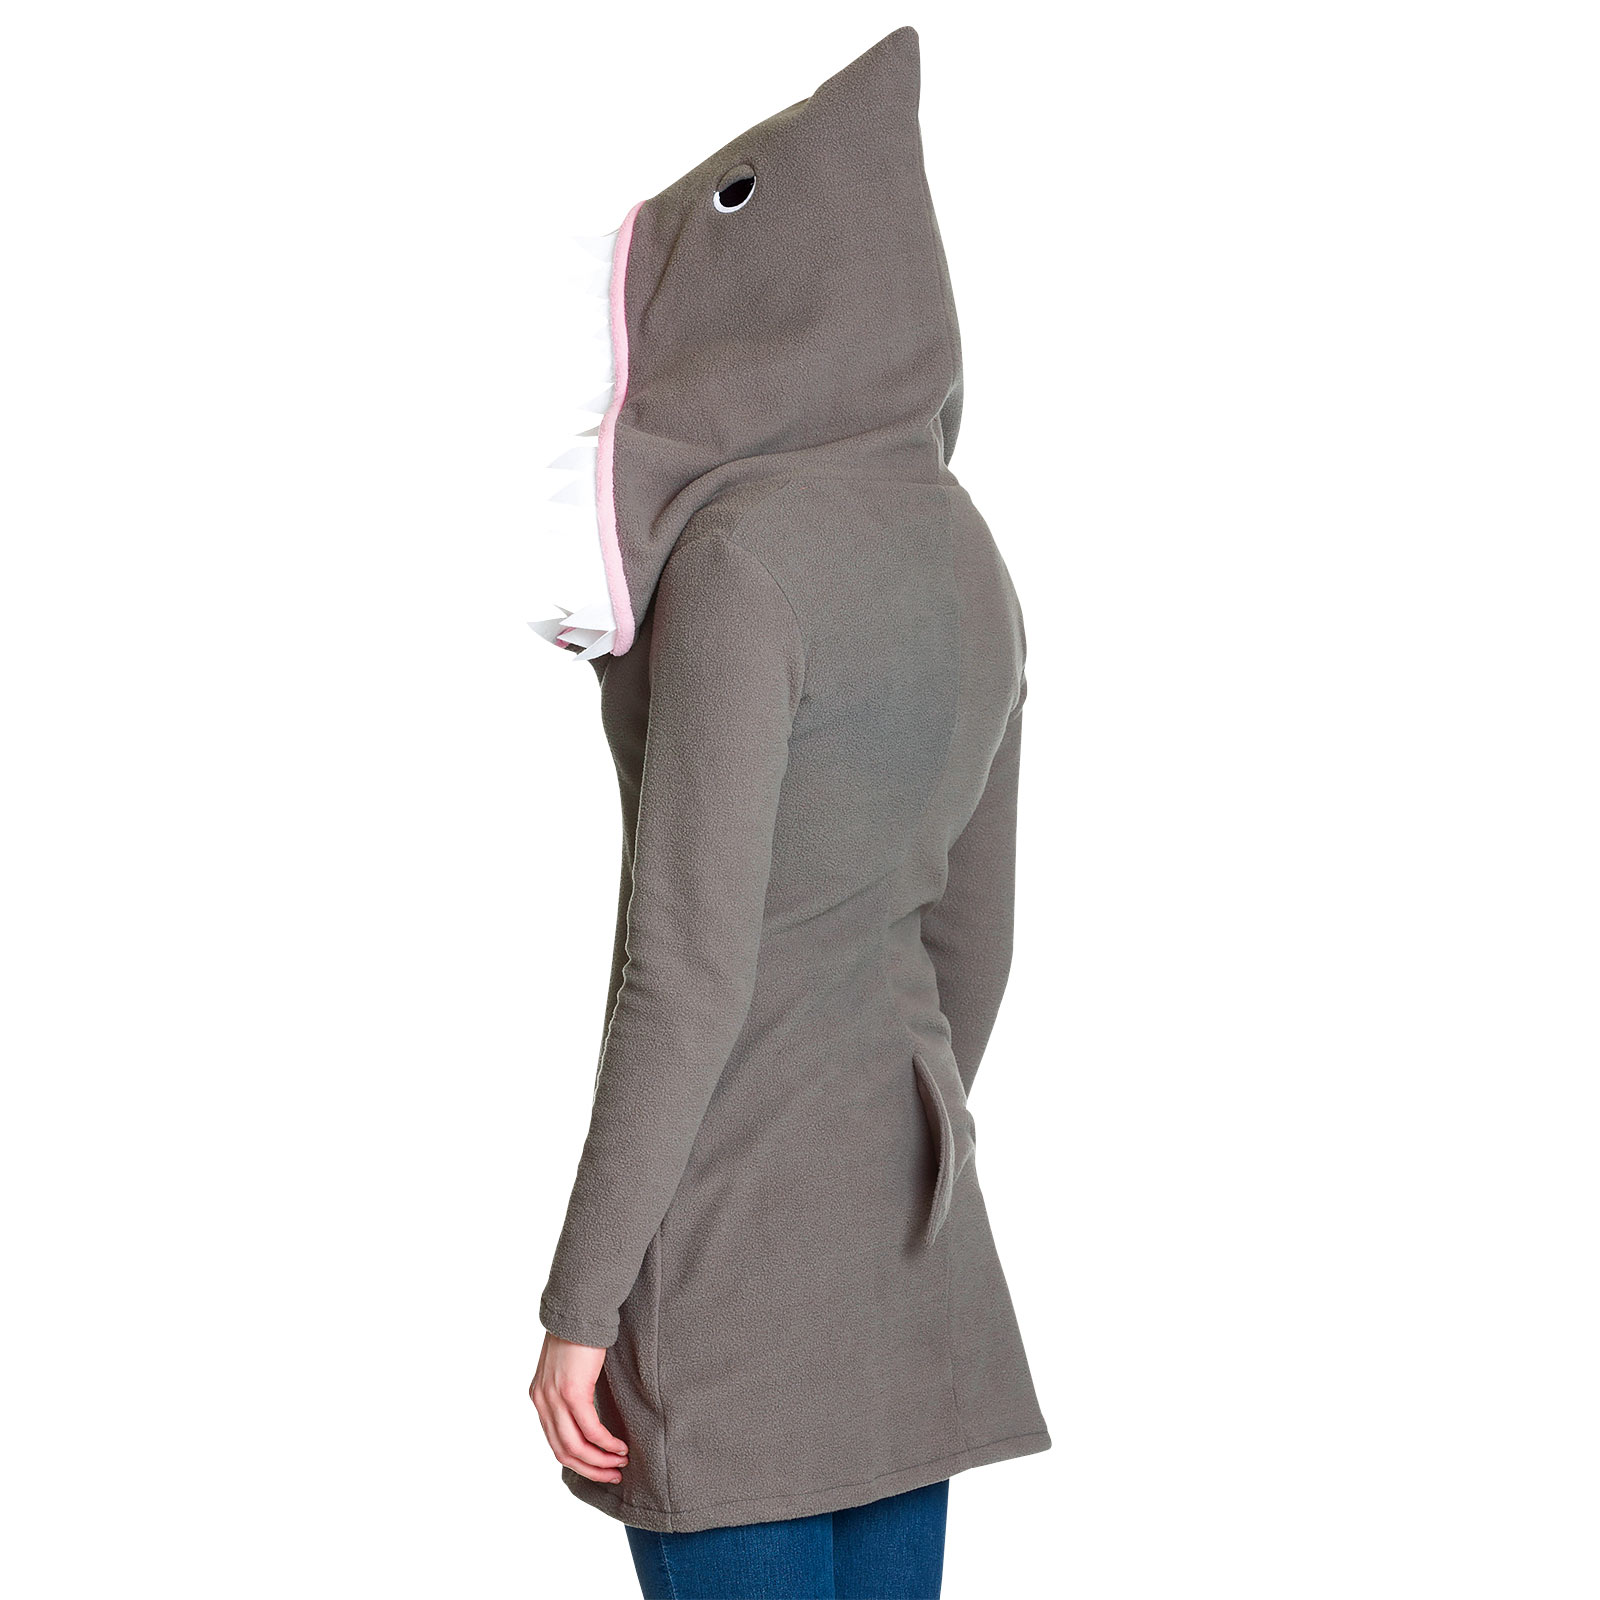 Sharky - Shark Costume for Women